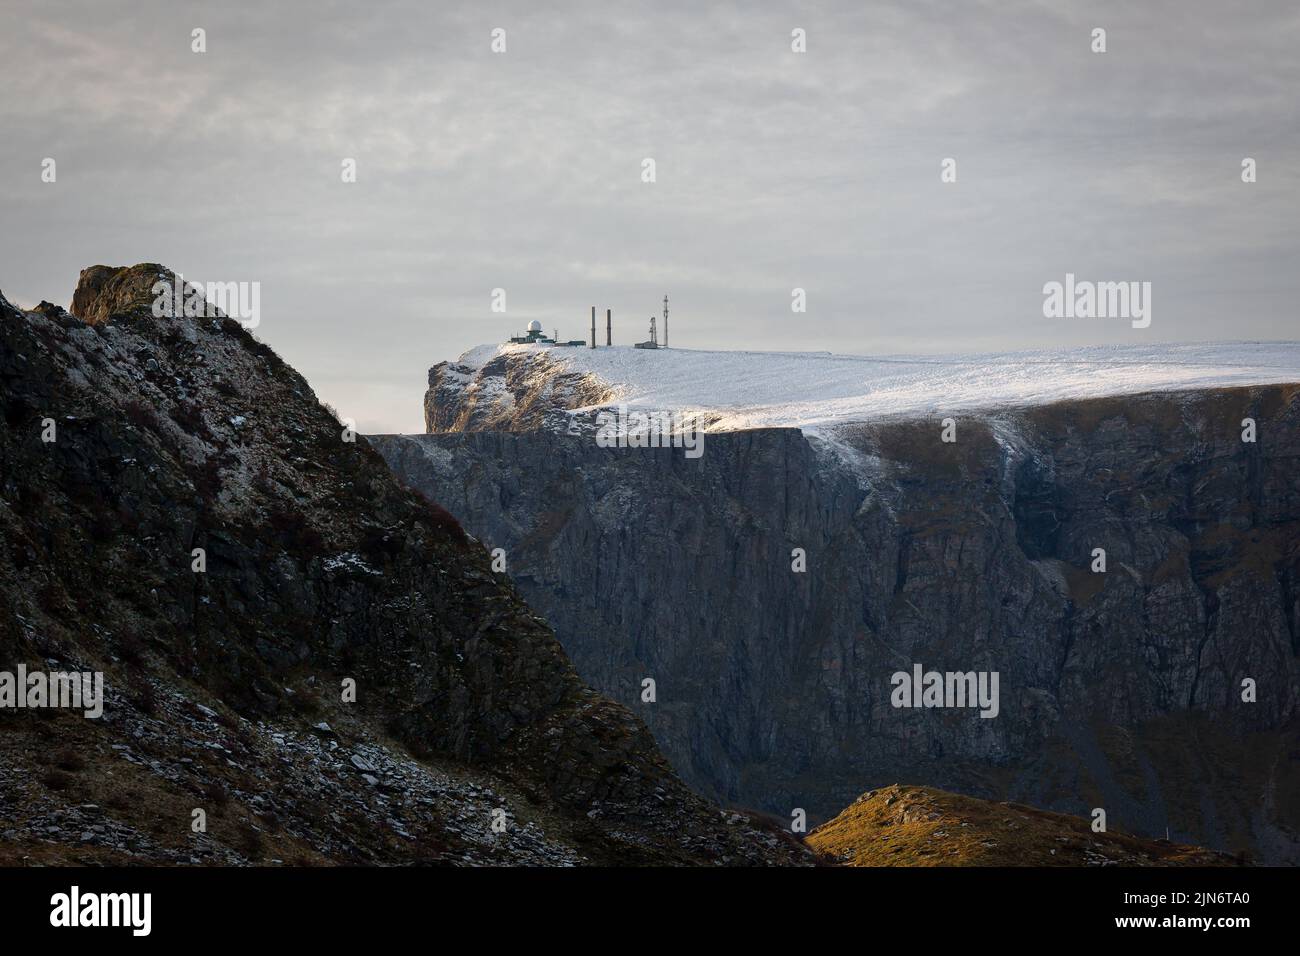 La vista di un edificio stazione meteo sulla scogliera innevata e una cima di una montagna Foto Stock